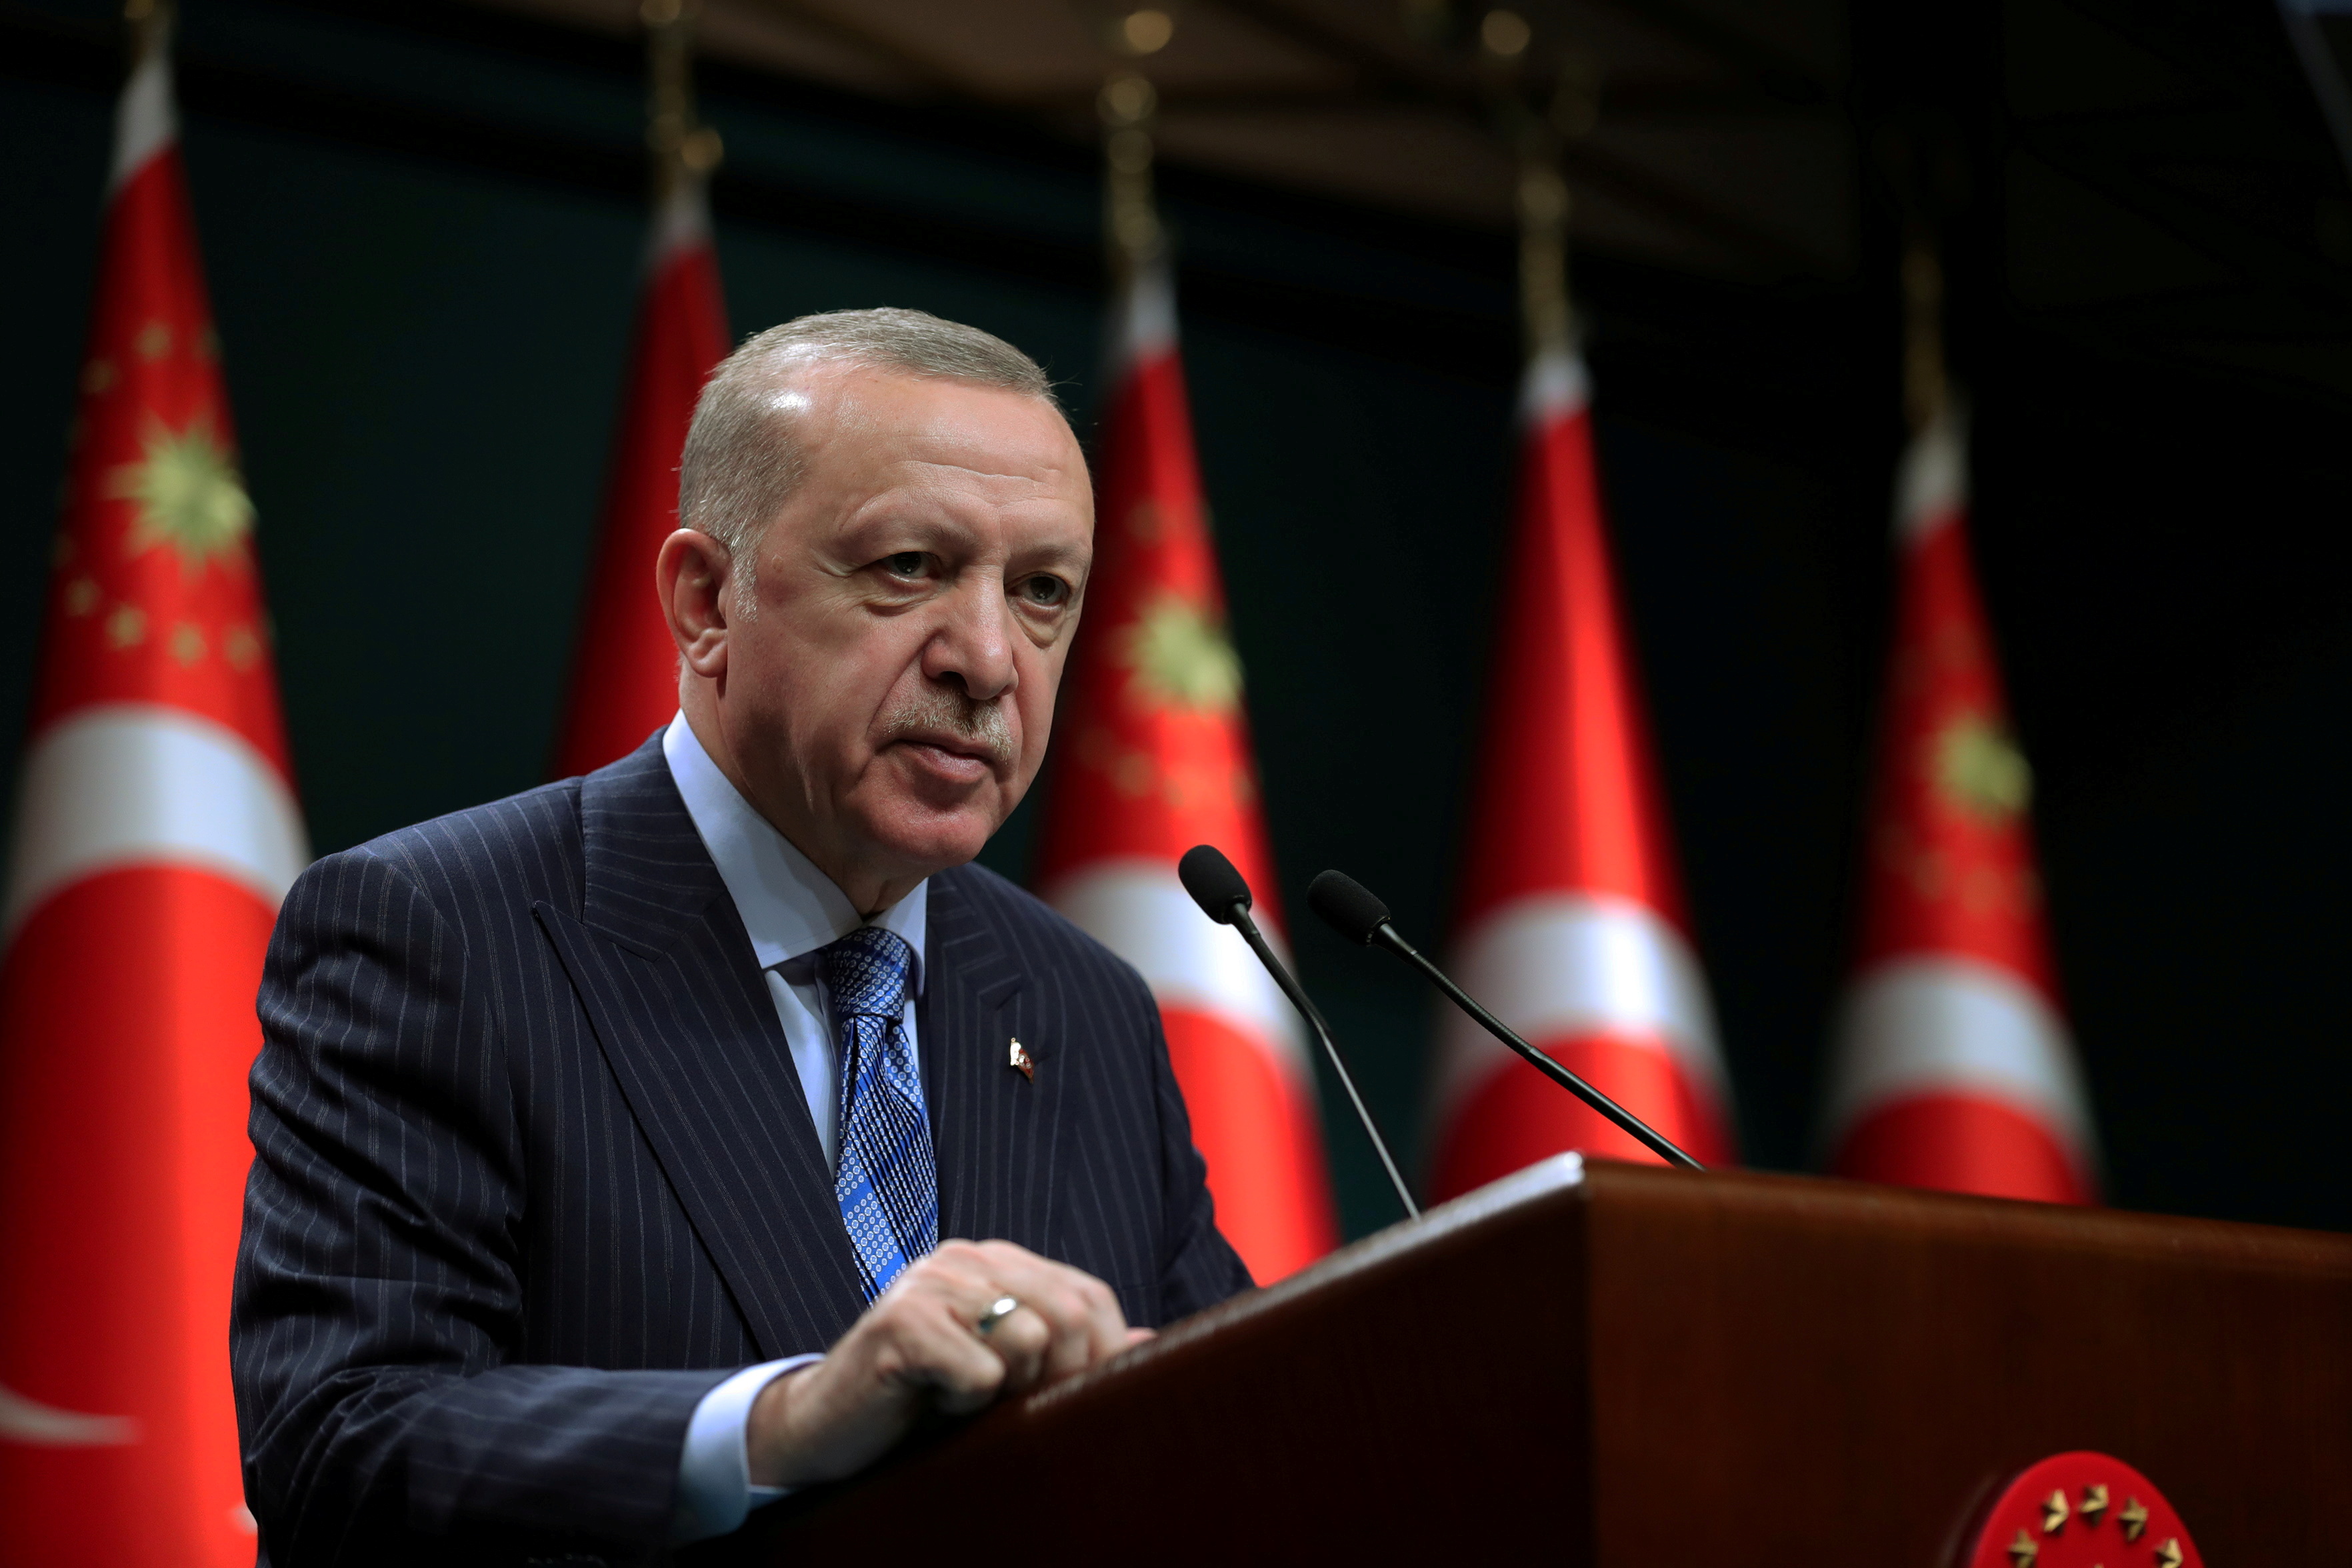 <p>AKP’li Cumhurbaşkanı Erdoğan’ın görev onayı ise düşüşte. 1067 kişi ile gerçekleştirilen araştırmaya göre Türkiye’nin en büyük sorunu ekonomi diyenlerin oranı yüzde 75,6 oldu. Adalet ise yüzde 10,4 ile en büyük ikinci sorun olarak gösterildi.</p>